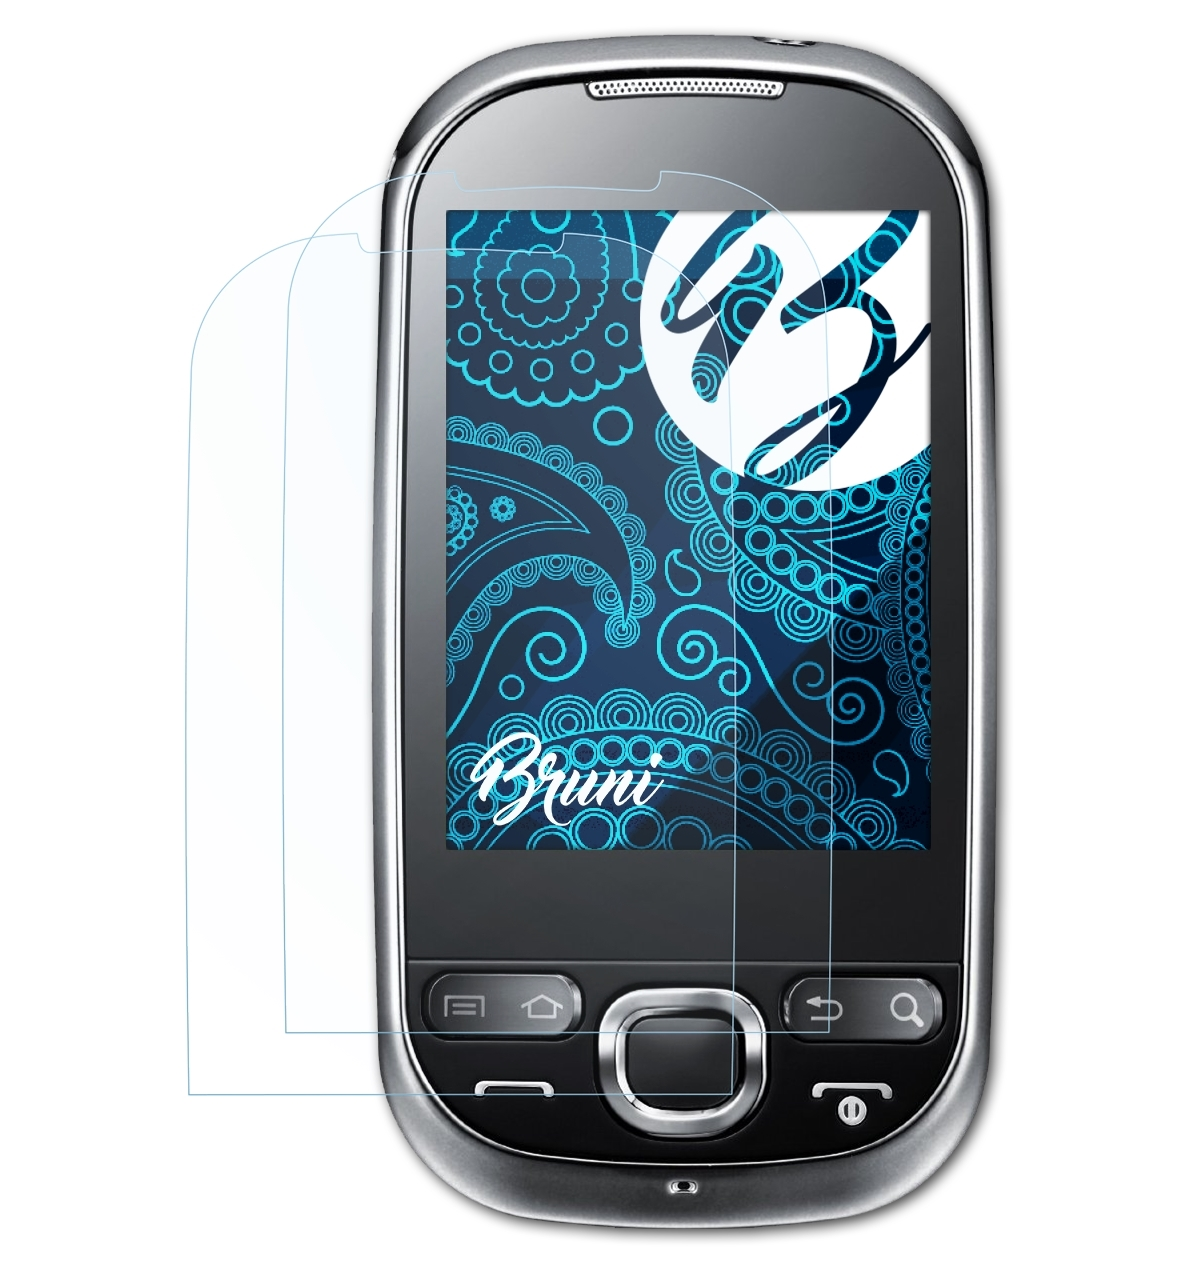 BRUNI 2x Basics-Clear Schutzfolie(für 550 Samsung (GT-i5500)) Galaxy